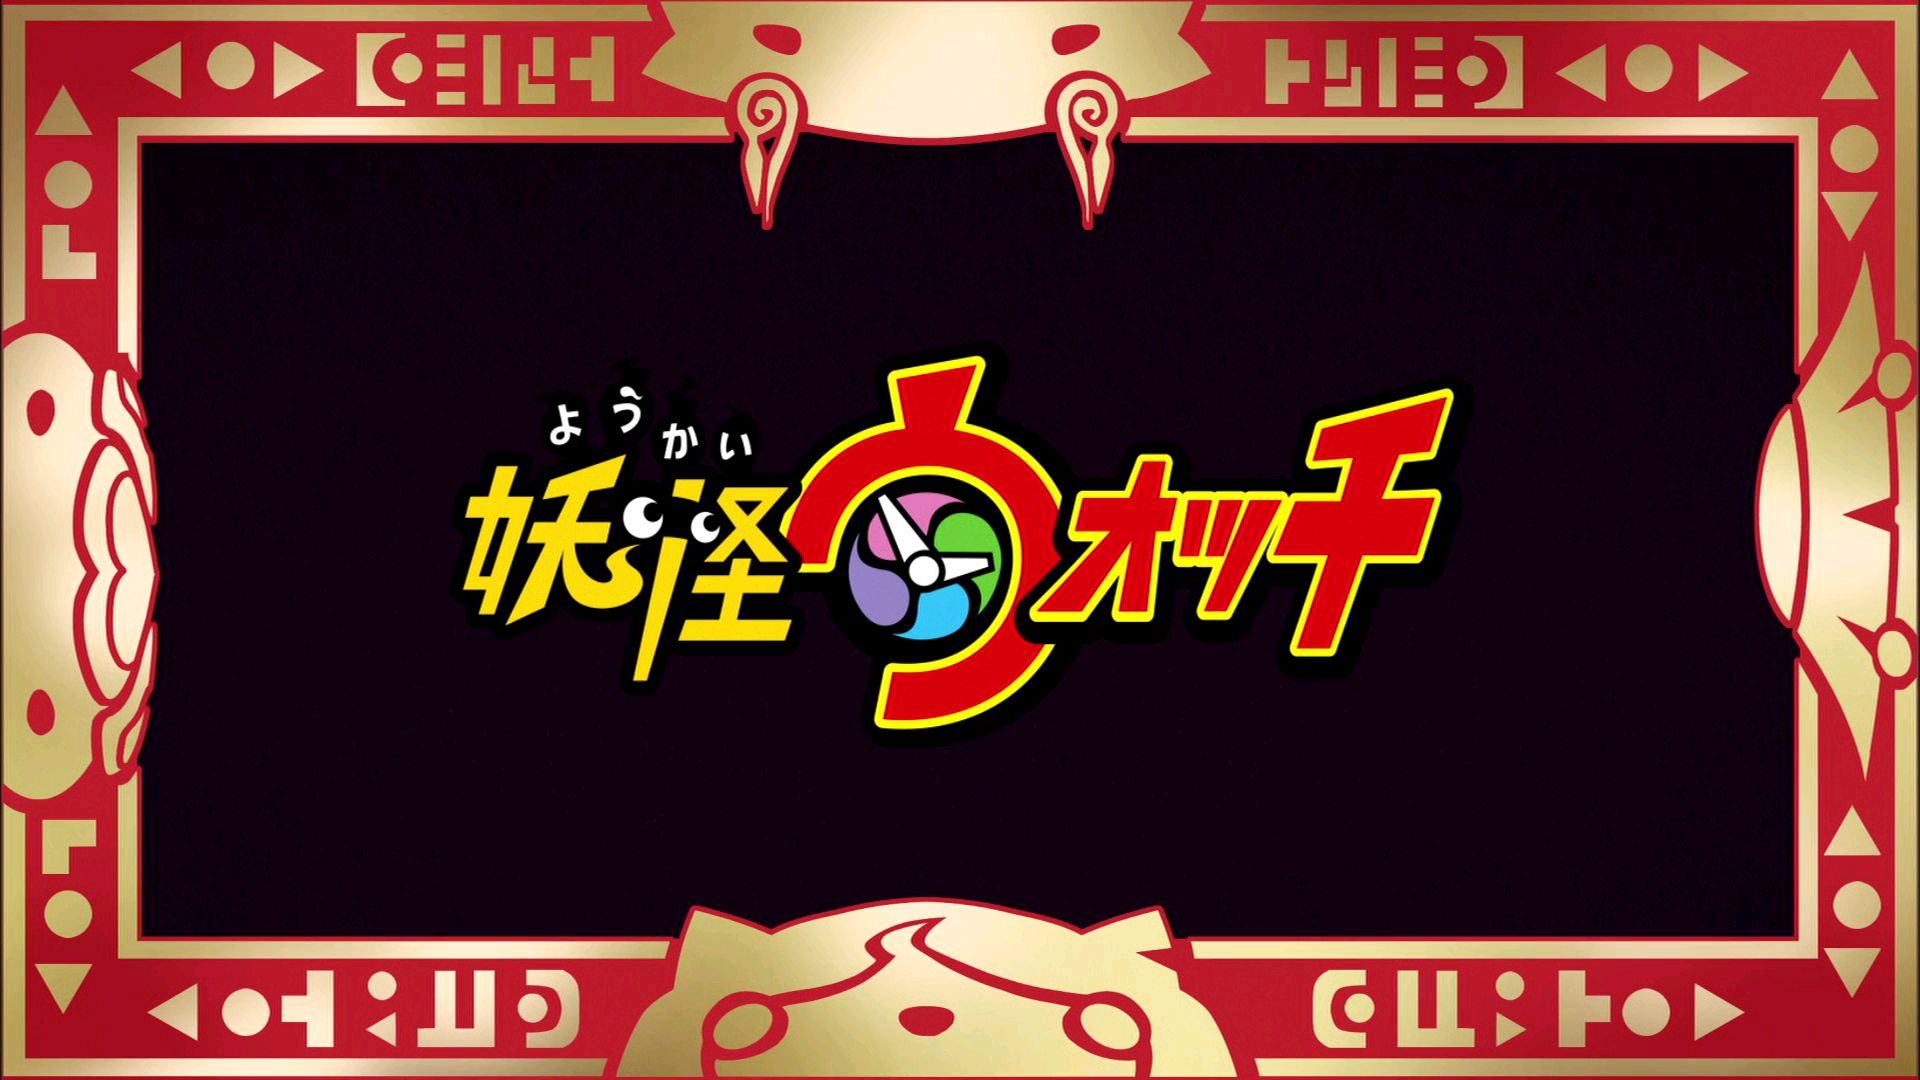 Watch Yo-kai Watch Season 1 Episode 25 - Jibanyan's Secret Online Now